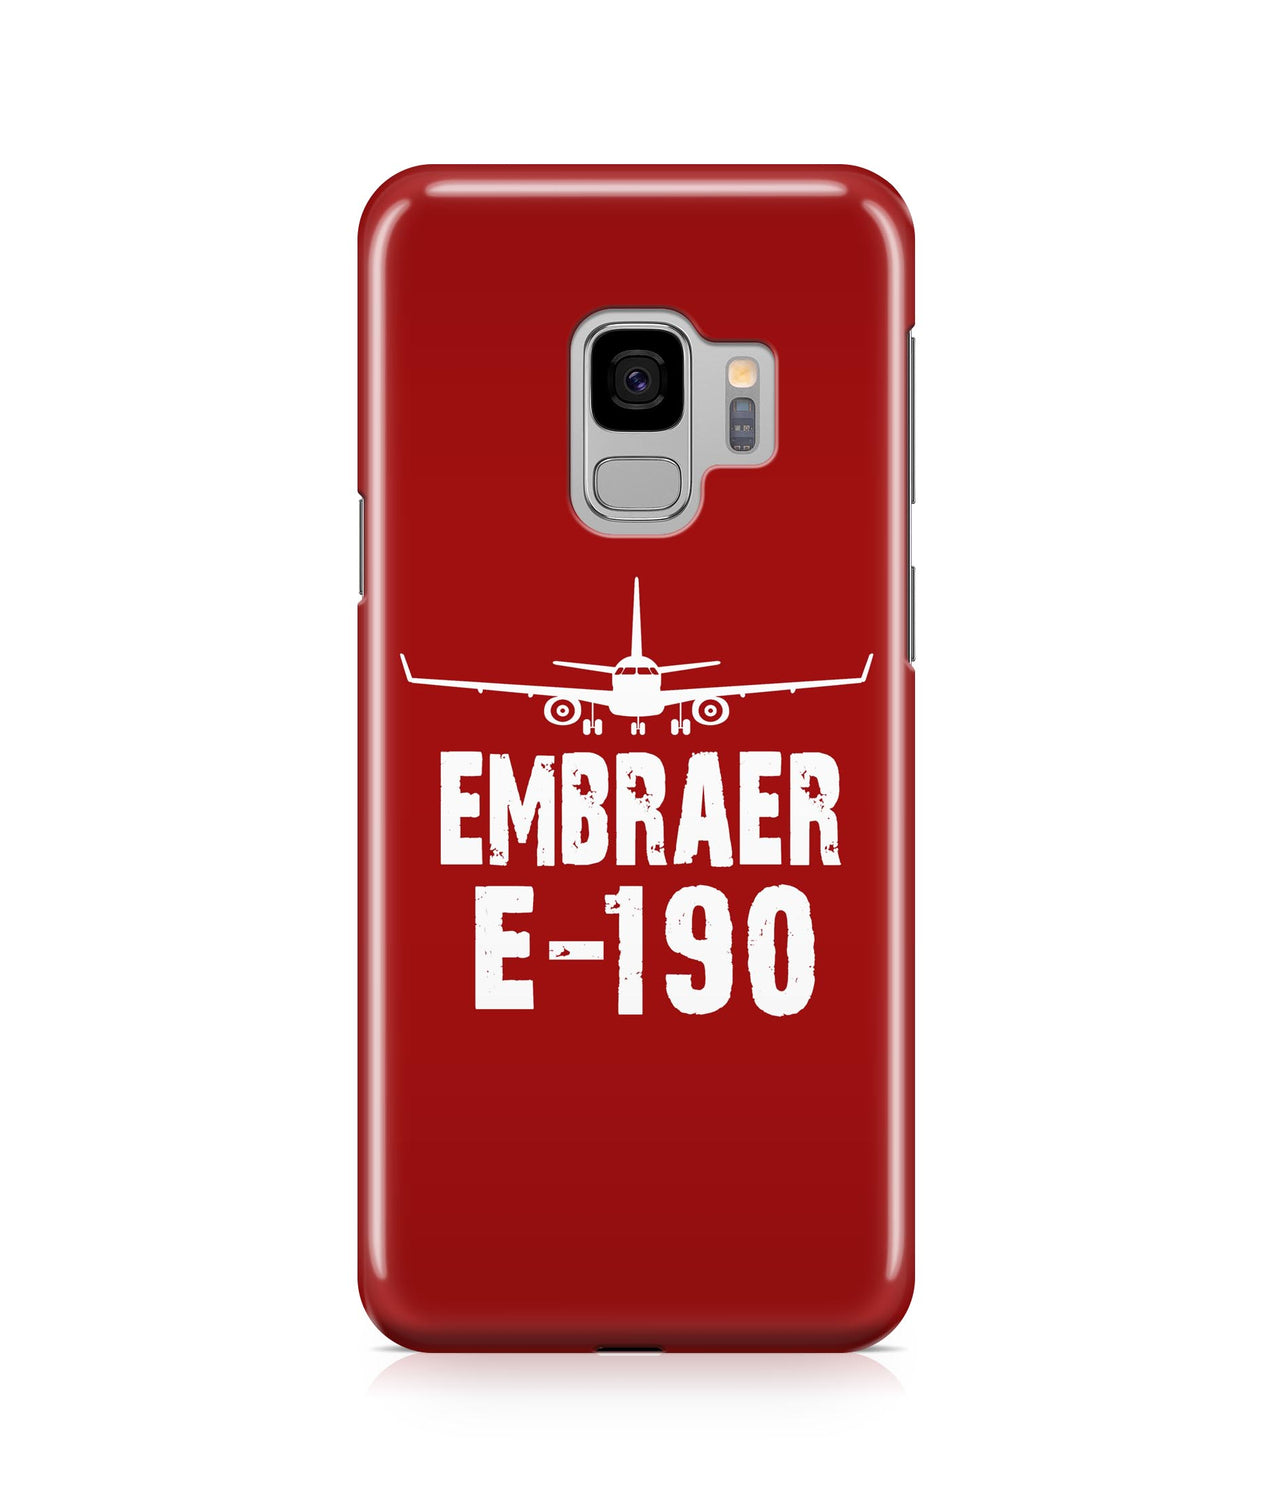 Embraer E-190 Plane & Designed Samsung J Cases